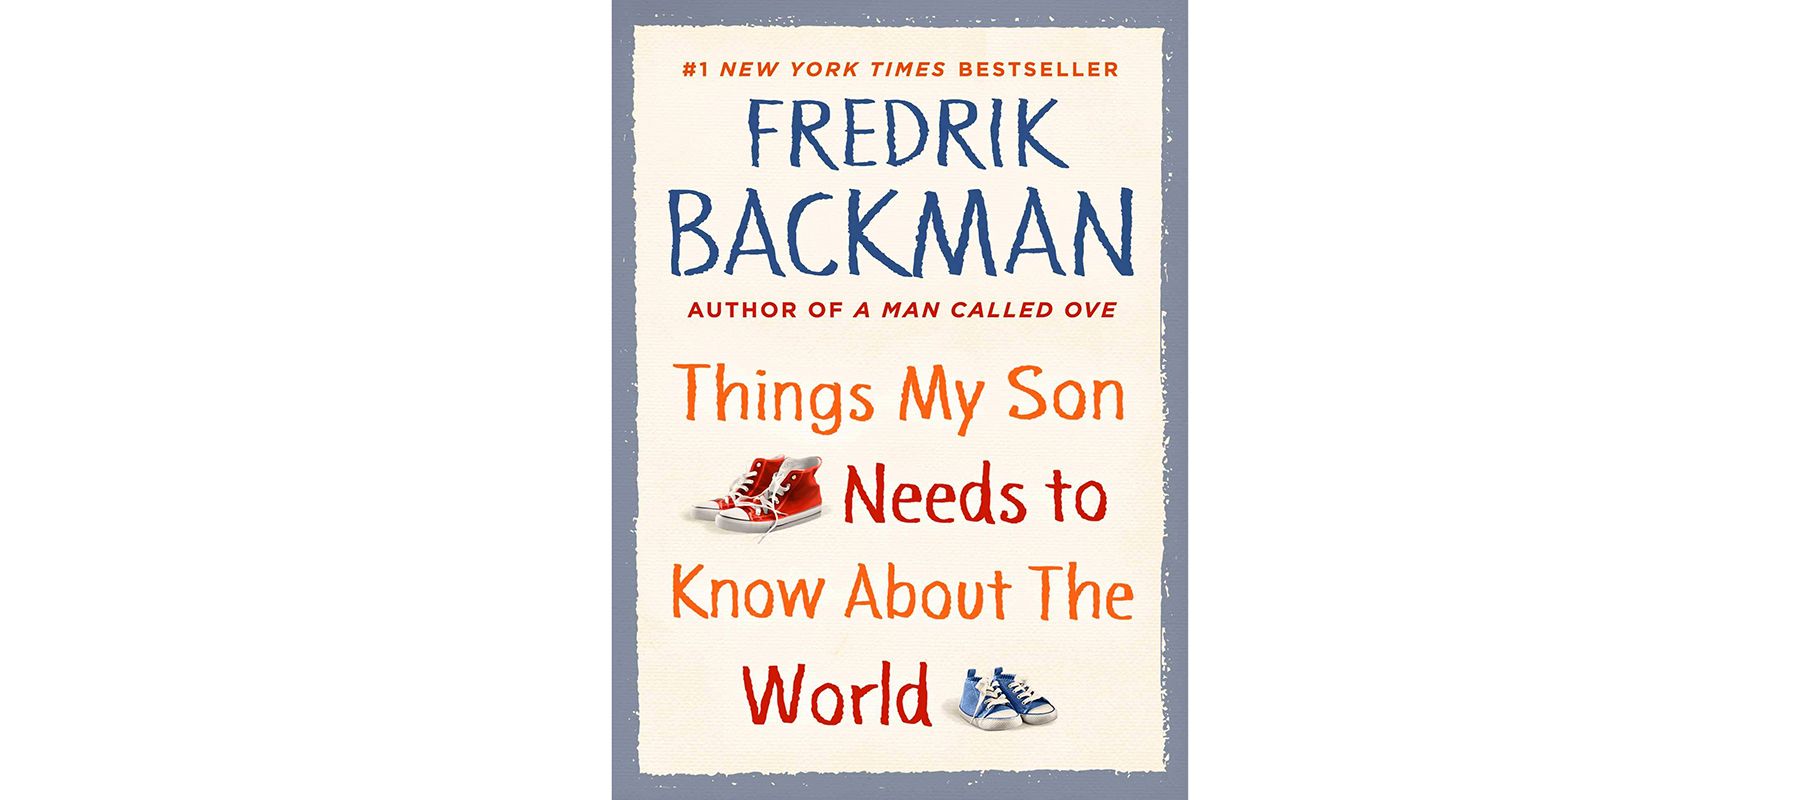 Իրերի շապիկ, որոնք իմ որդին պետք է իմանա աշխարհի մասին, հեղինակ ՝ Ֆրեդրիկ Բեքման